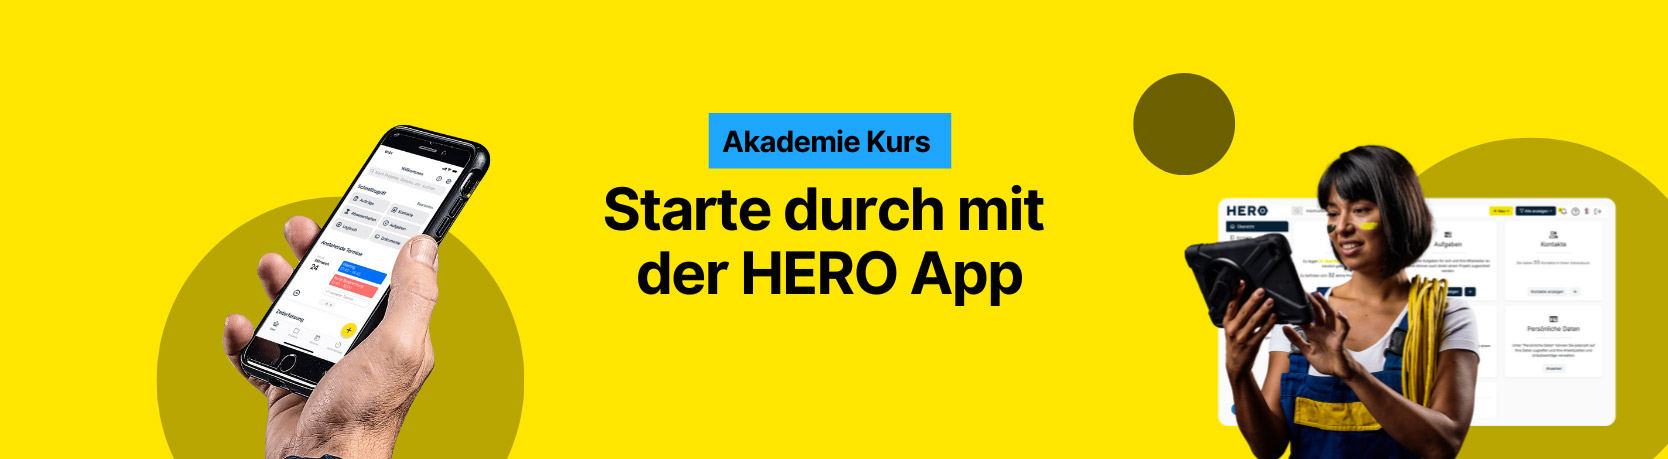 banner-akademie-app.jpg